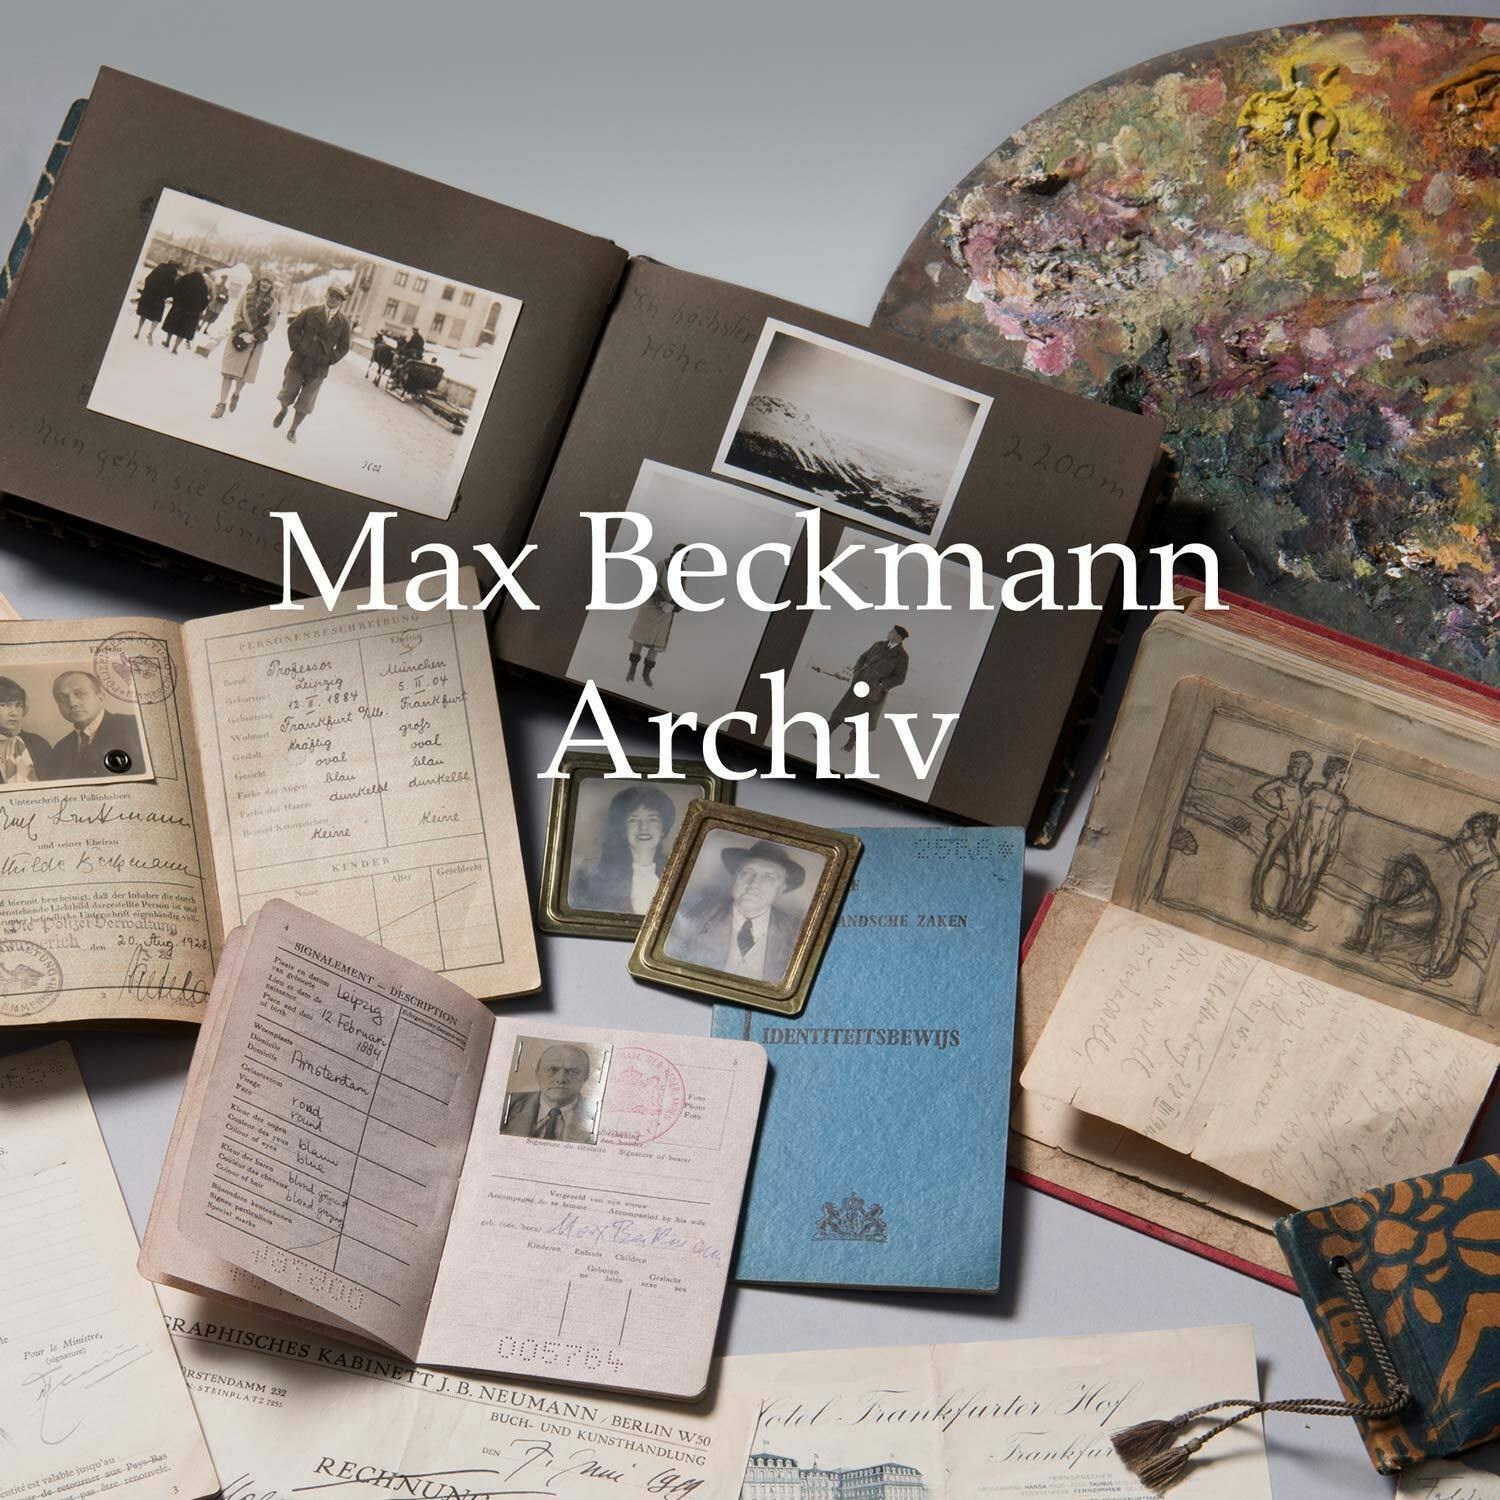 Max Beckmann Archiv